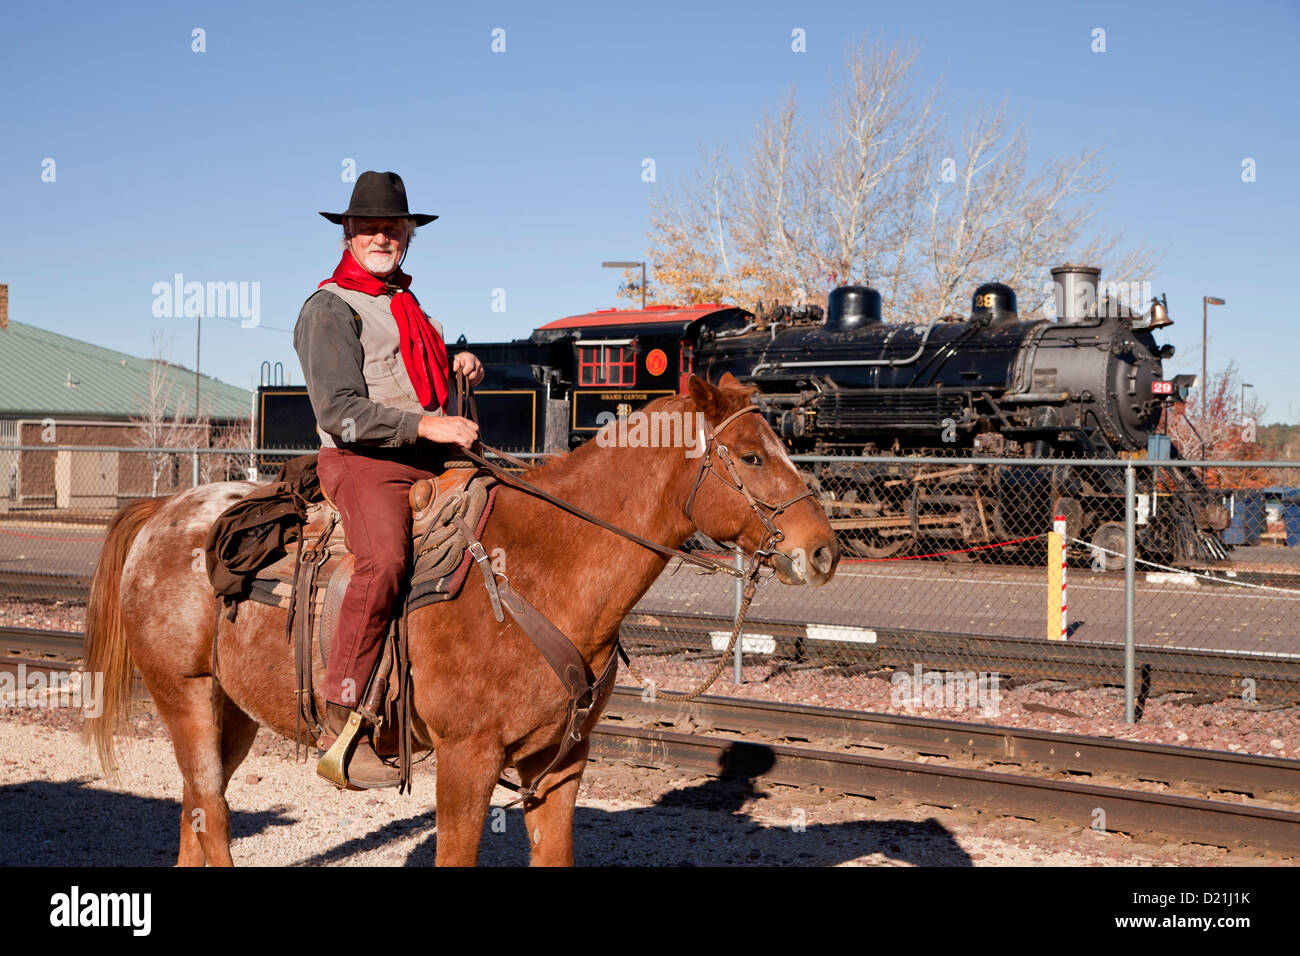 Cowboy sur son cheval et l'historic steam locomotive de chemin de fer du Grand Canyon de Kingman, Arizona, USA Banque D'Images